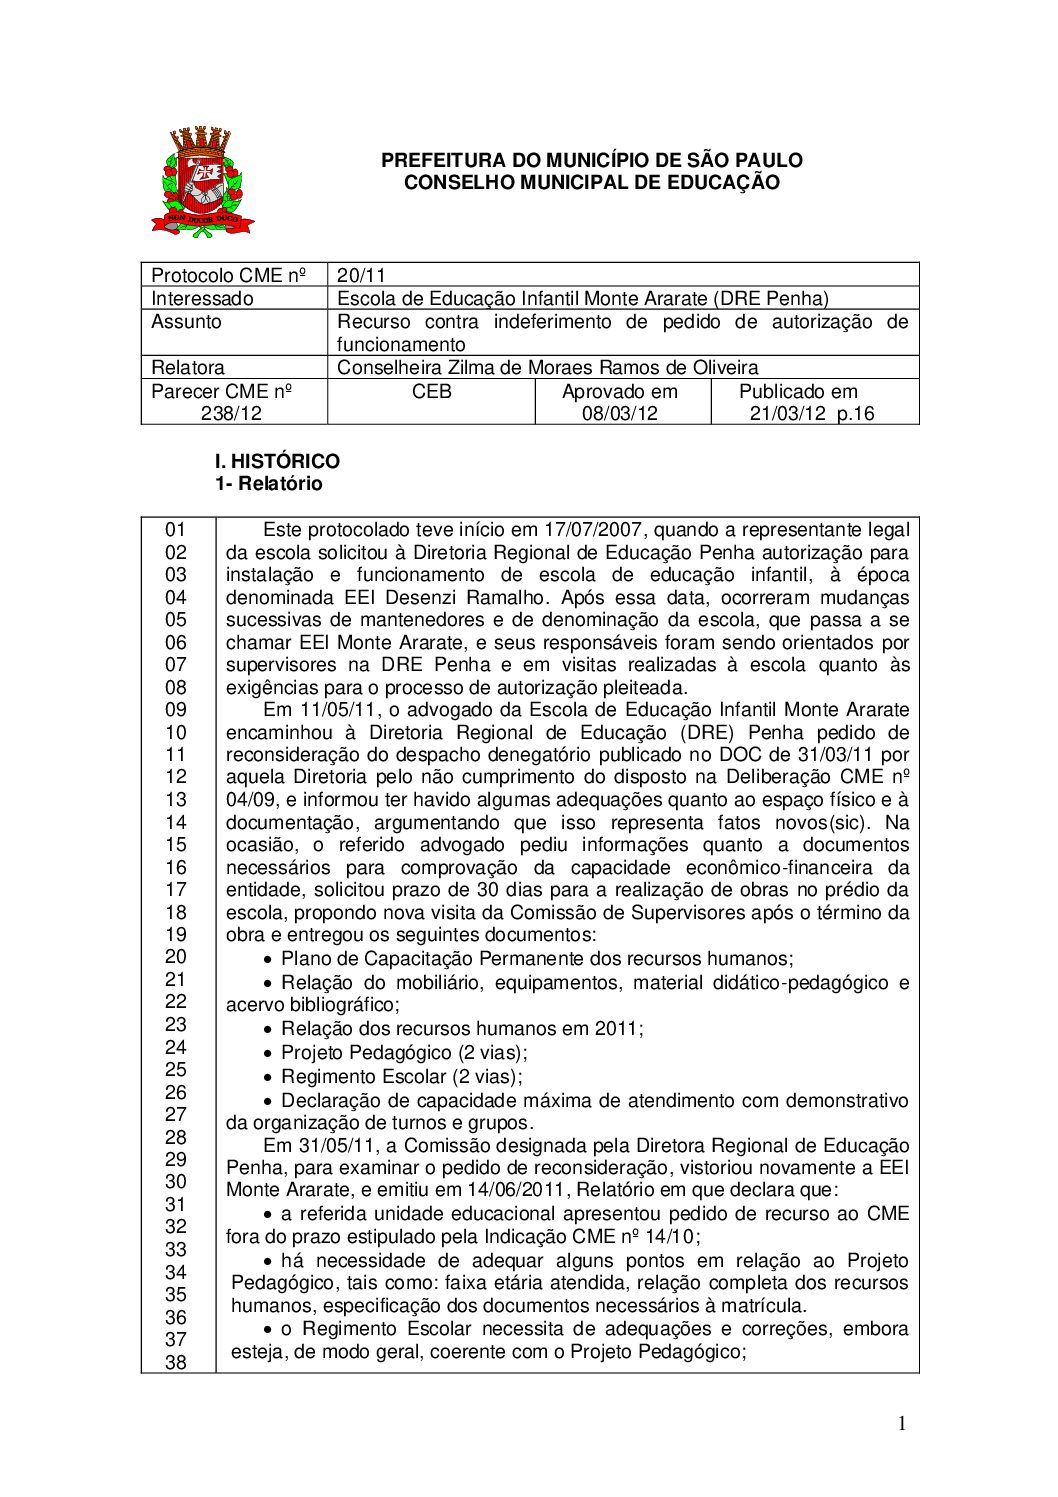 Parecer CME nº 238/2012 - Escola de Educação Infantil Monte Ararate (DRE Penha) - Recurso contra indeferimento de pedido de autorização de funcionamento 